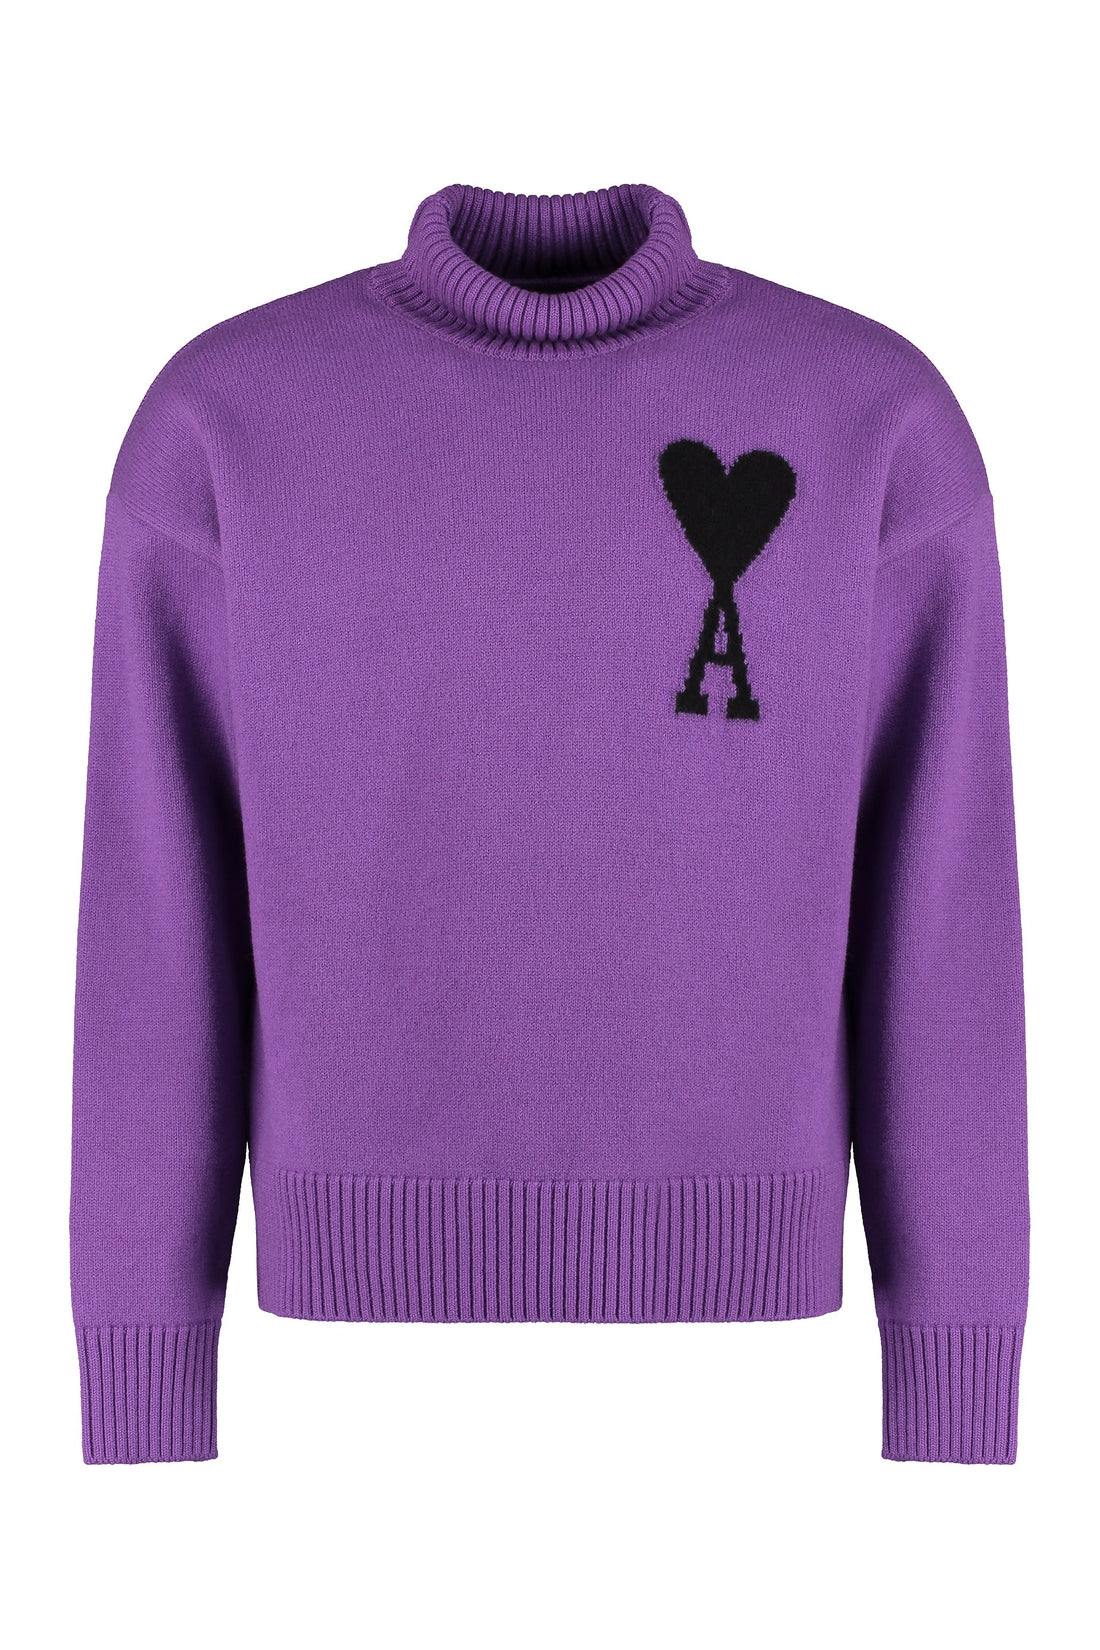 AMI PARIS-OUTLET-SALE-Wool turtleneck sweater-ARCHIVIST